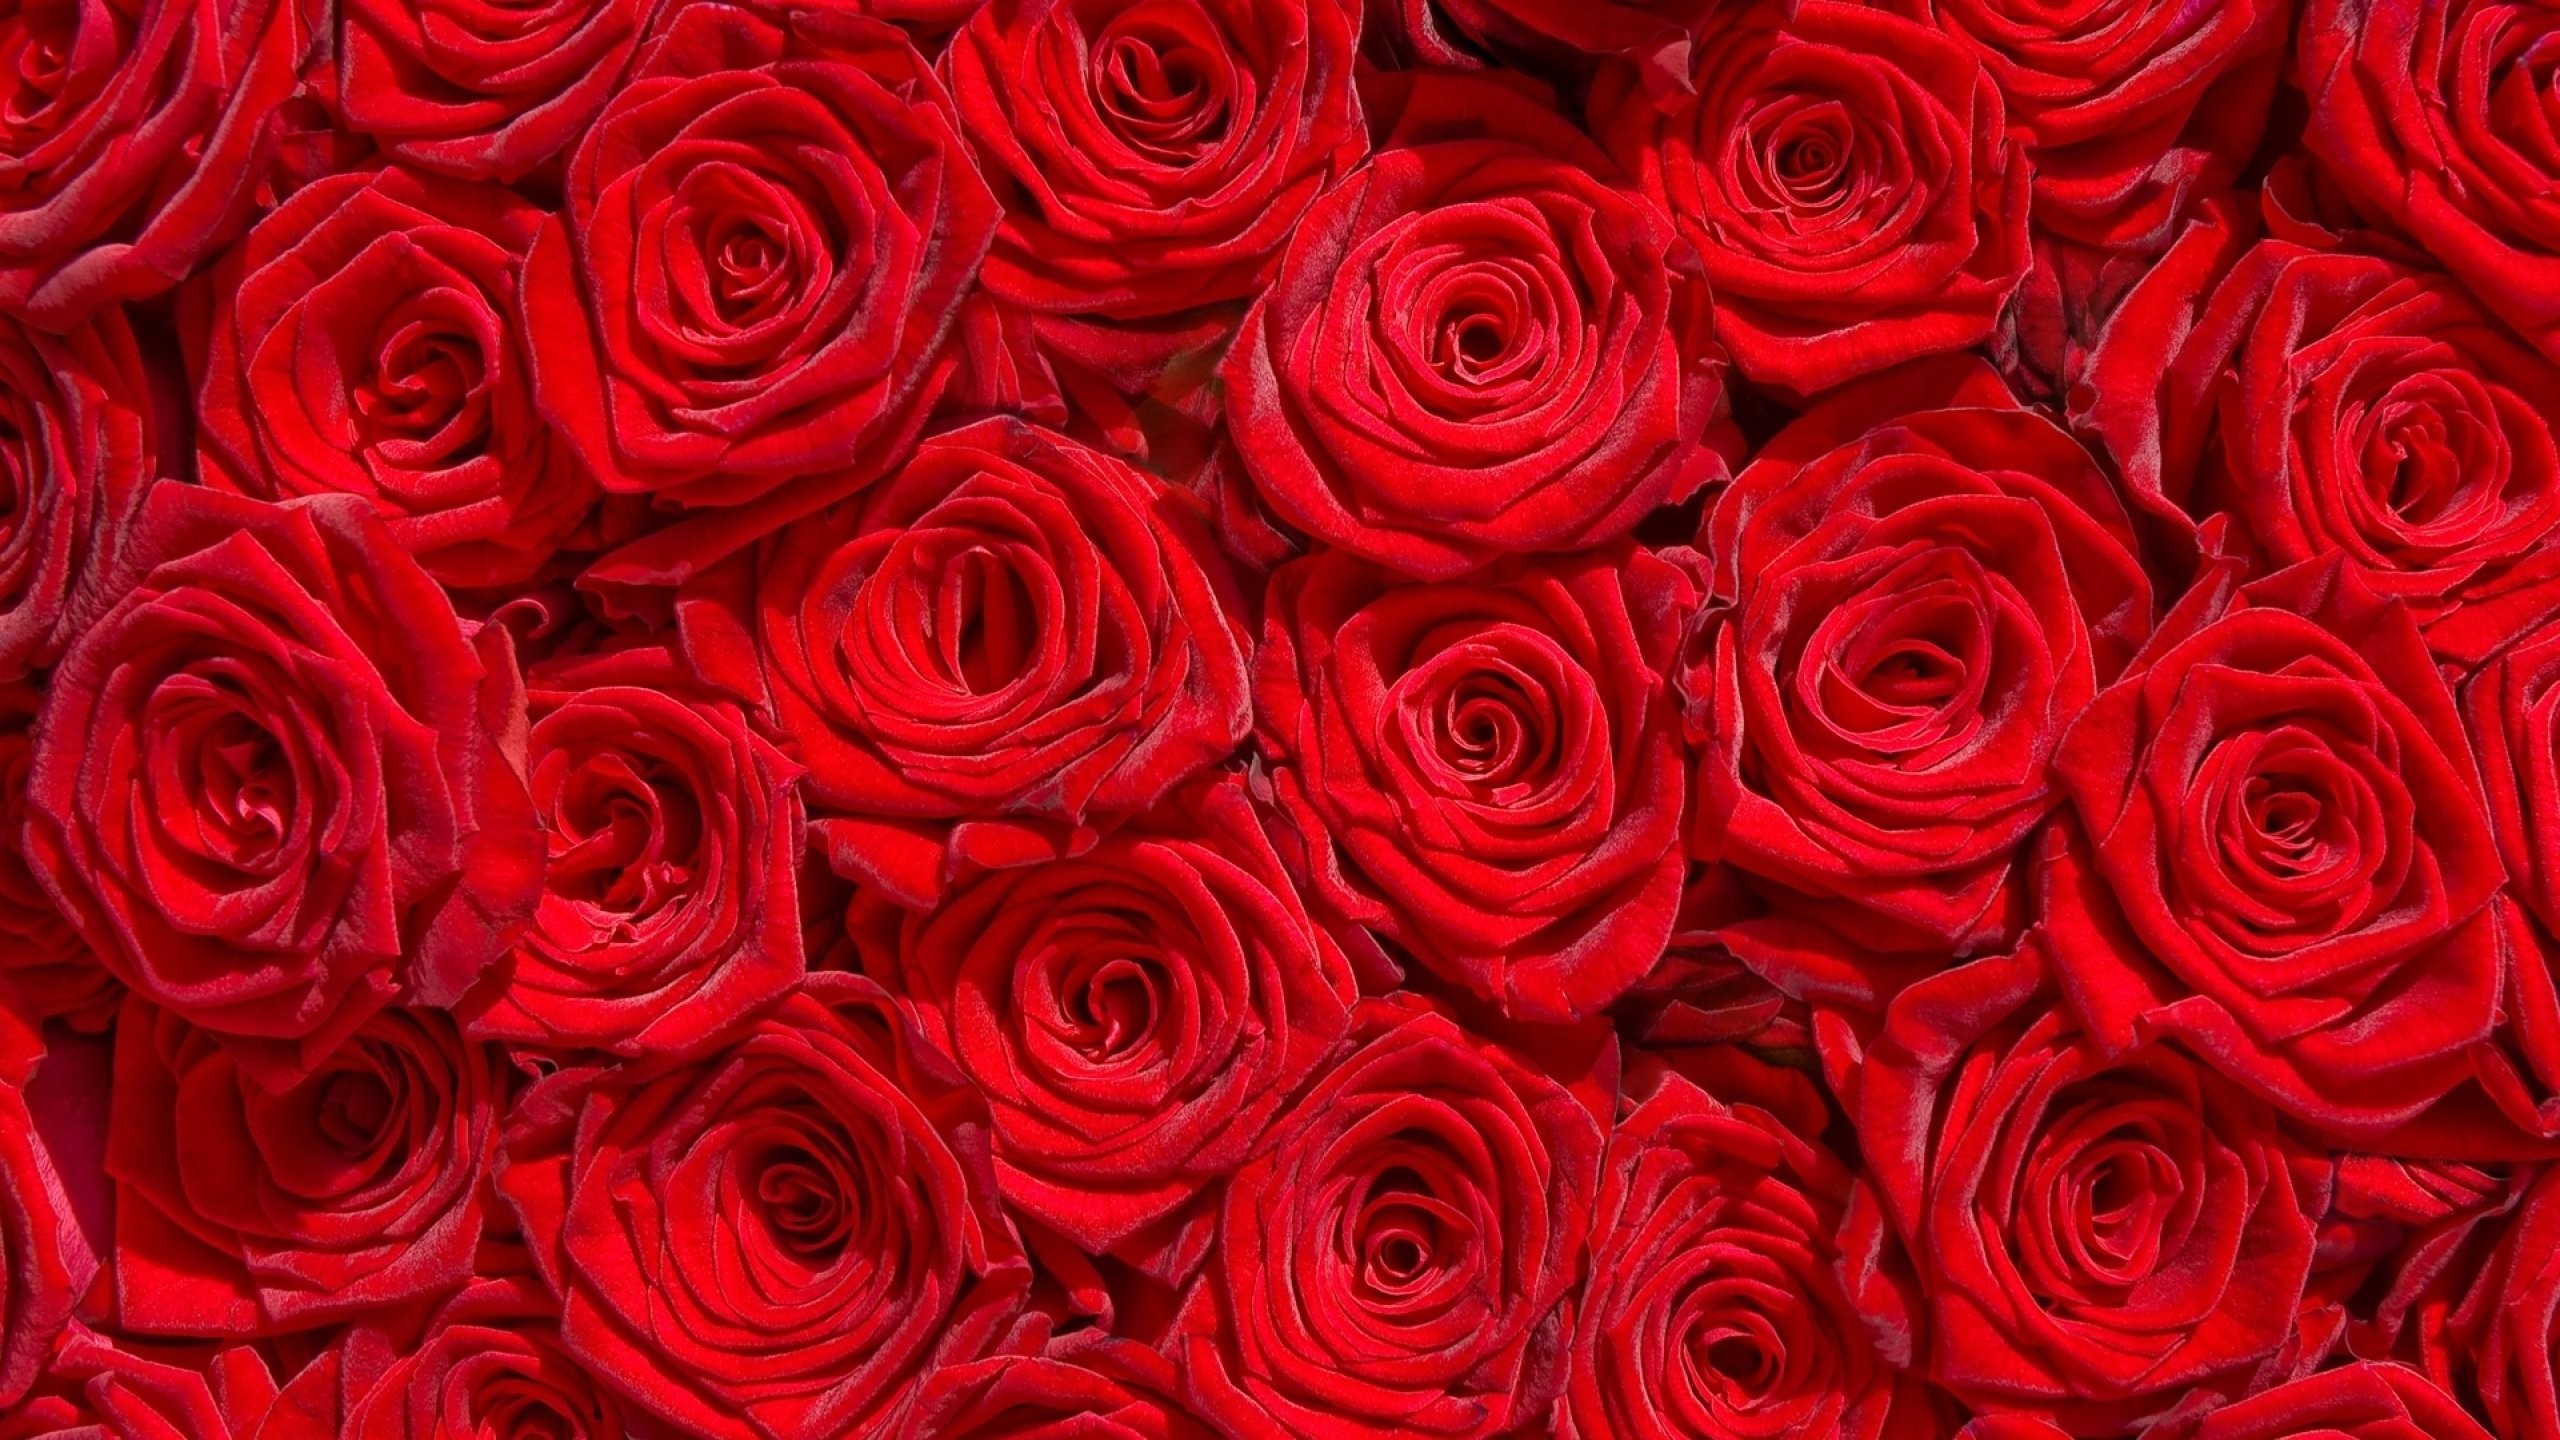 Red Rose Flower Garden Wallpaper - Green Million Flower Hd Walpaper , HD Wallpaper & Backgrounds